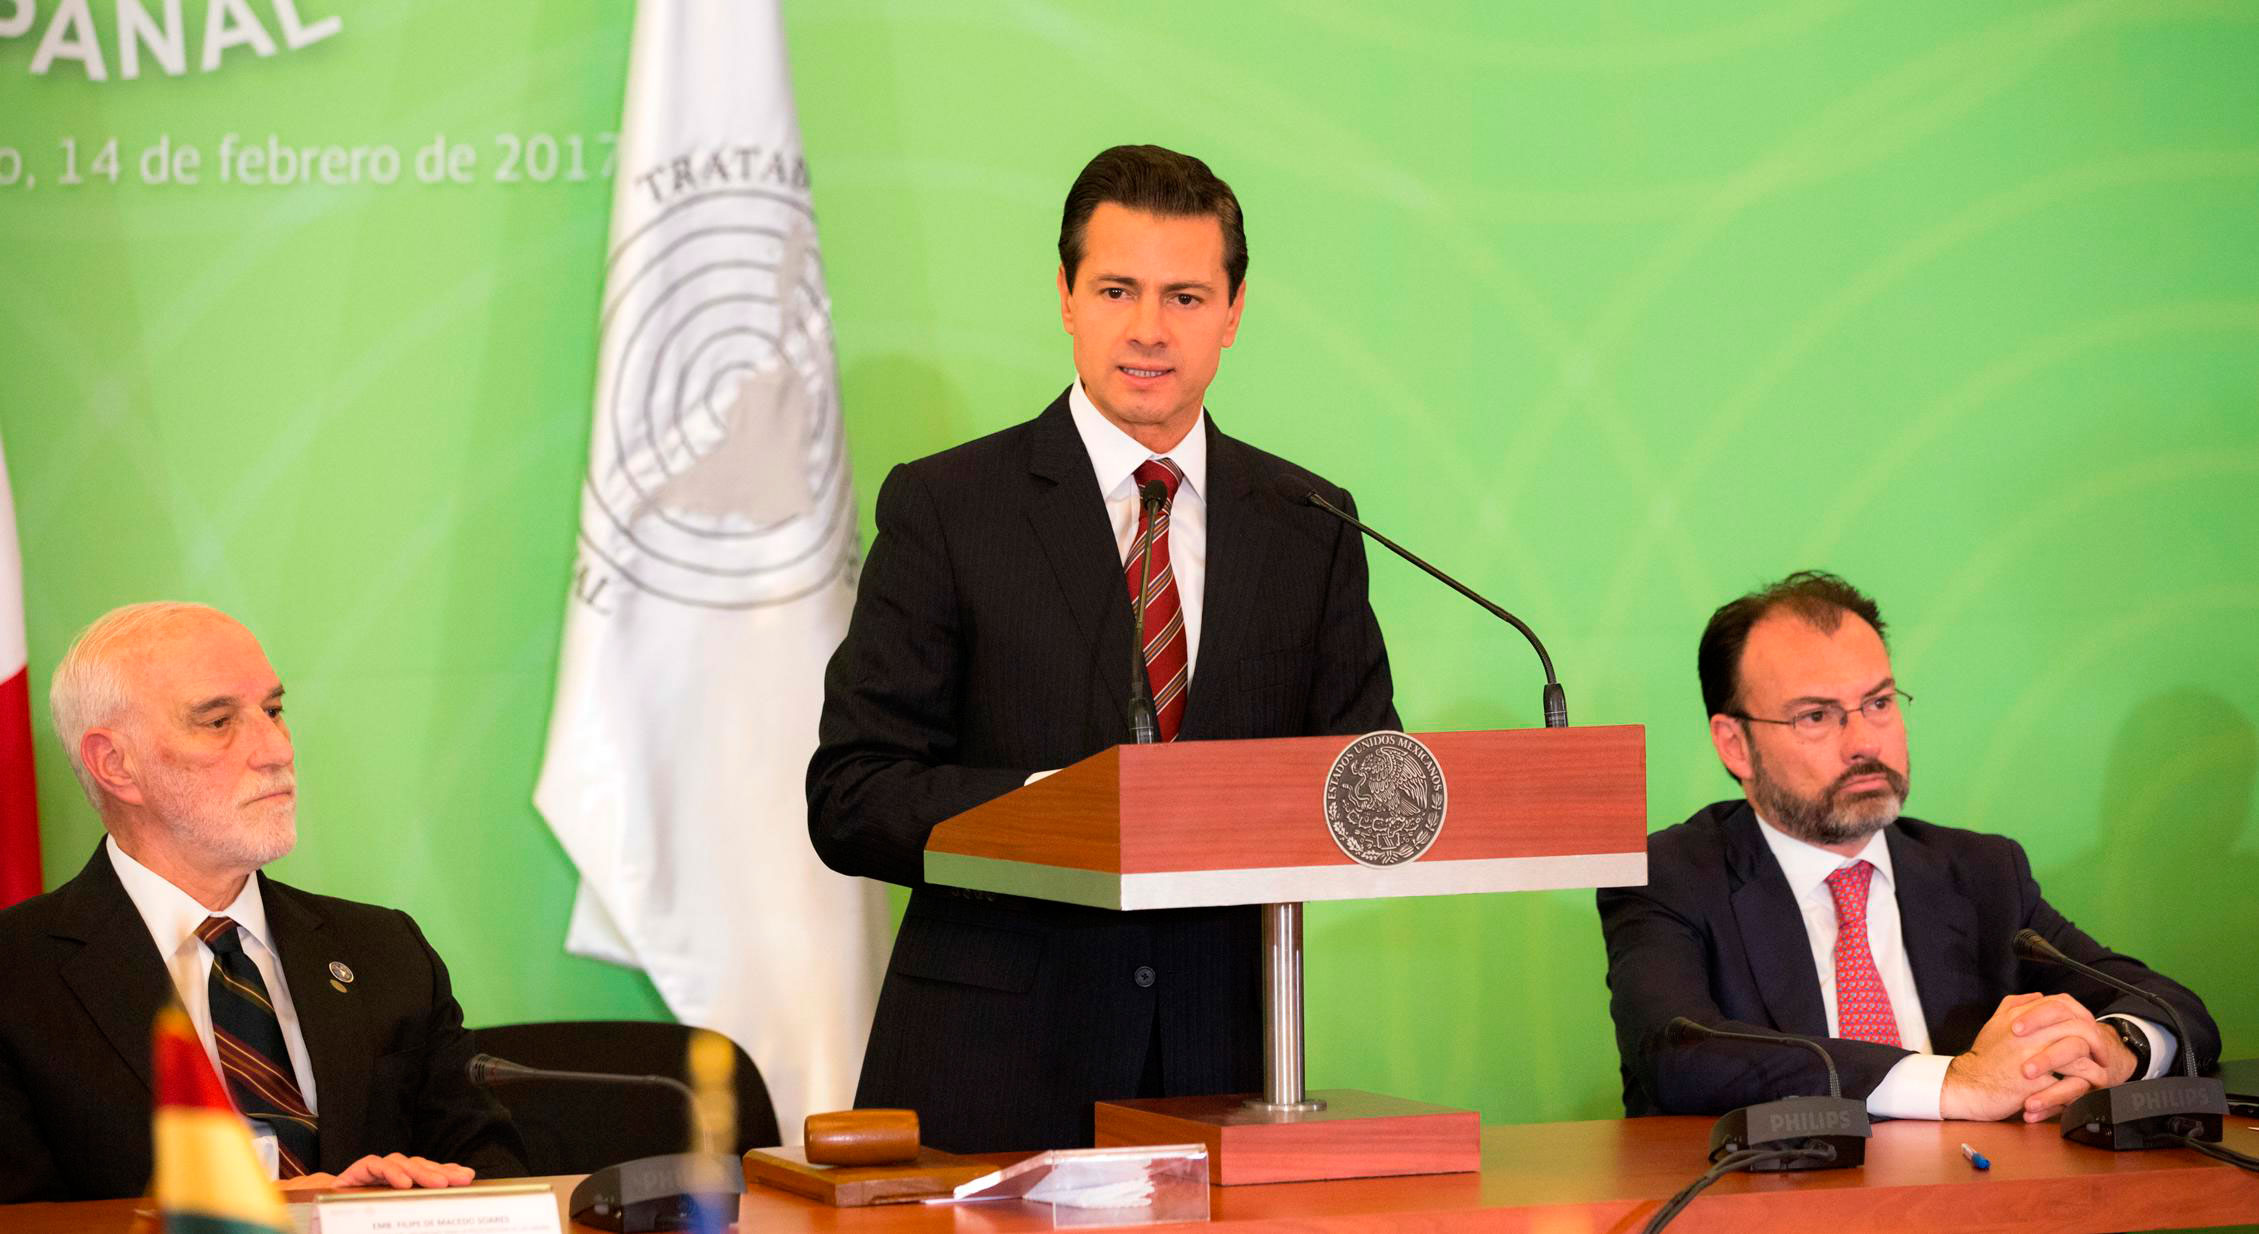 El presidente Enrique Peña Nieto agradeció a los pueblos de América Latina y el Caribe su apoyo frente a Estados Unidos